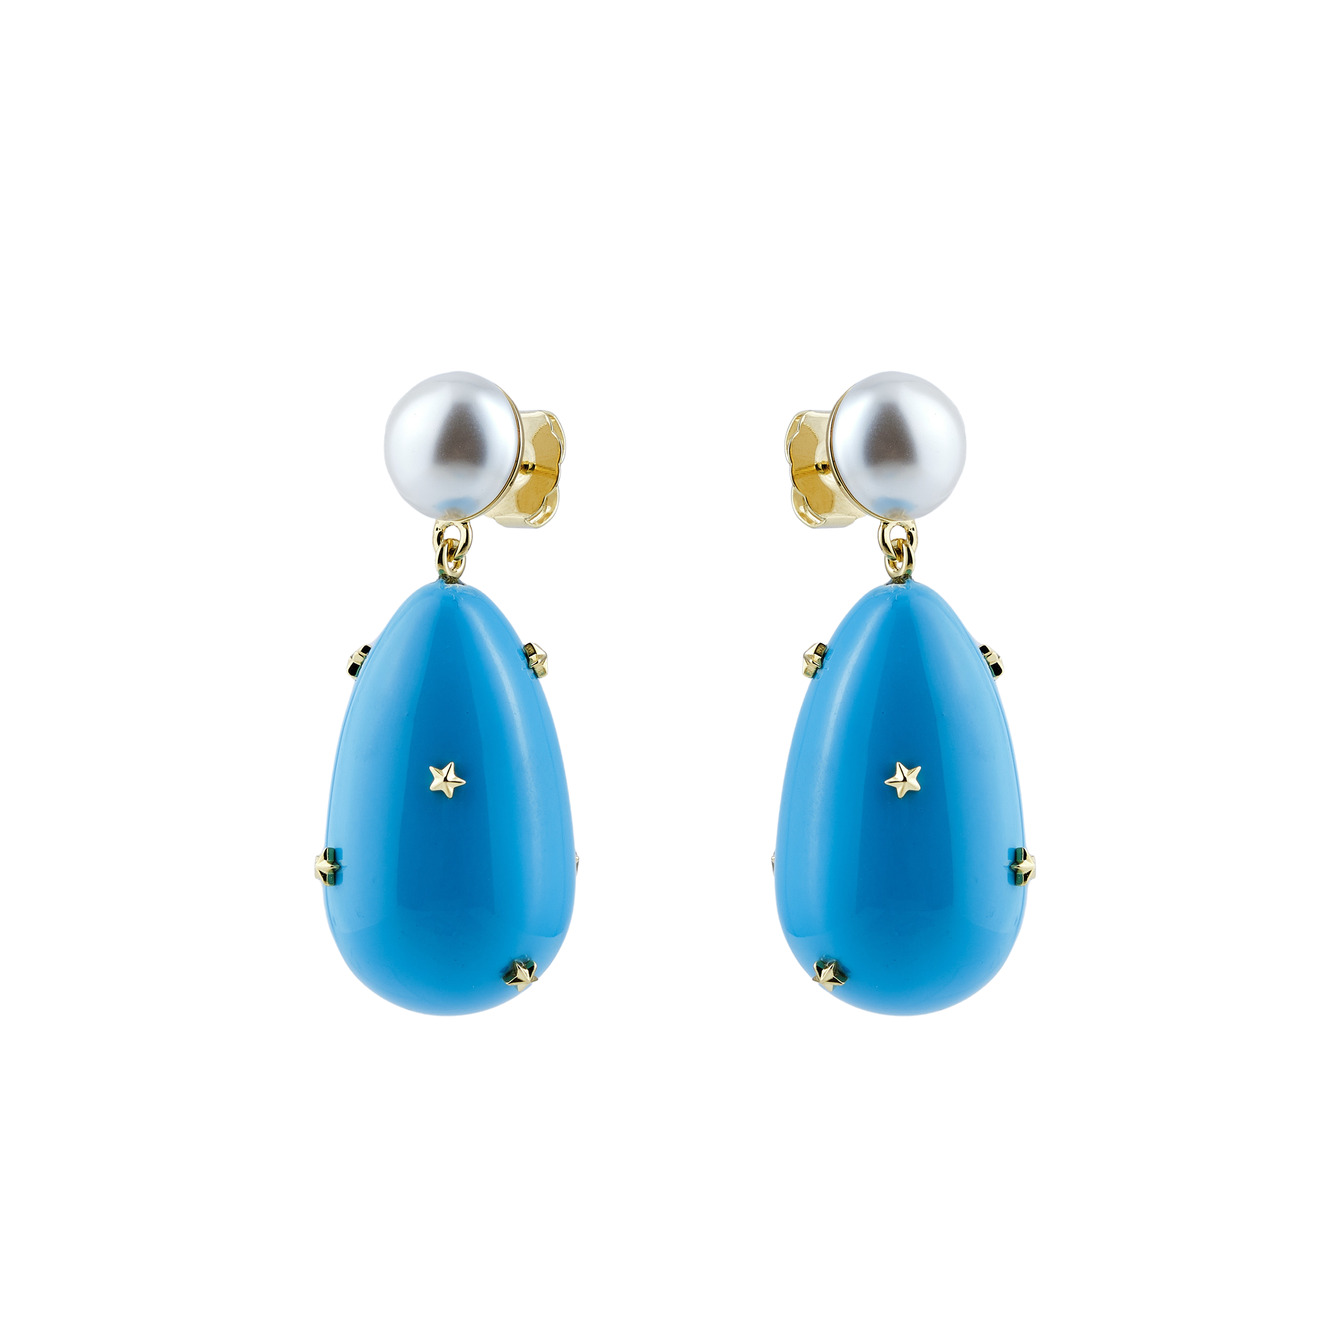 ESHVI Позолоченные серьги с жемчугом и голубой эмалью boheme позолоченные серьги long jaipur with baroque pearls с чёрной эмалью